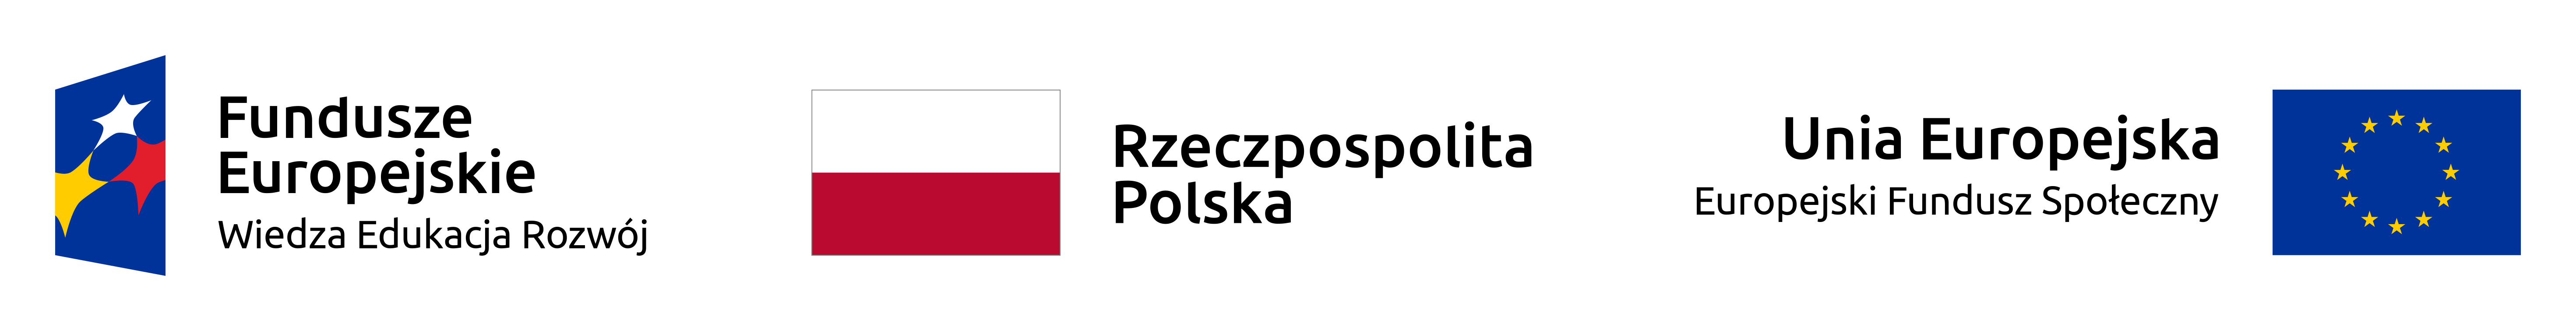 Logotyp POWER Fundusze Europjeskie Wiedza Edukcja Rozwoj, logo Rzeczpospolita Polska, Flaga Unia Europejska 